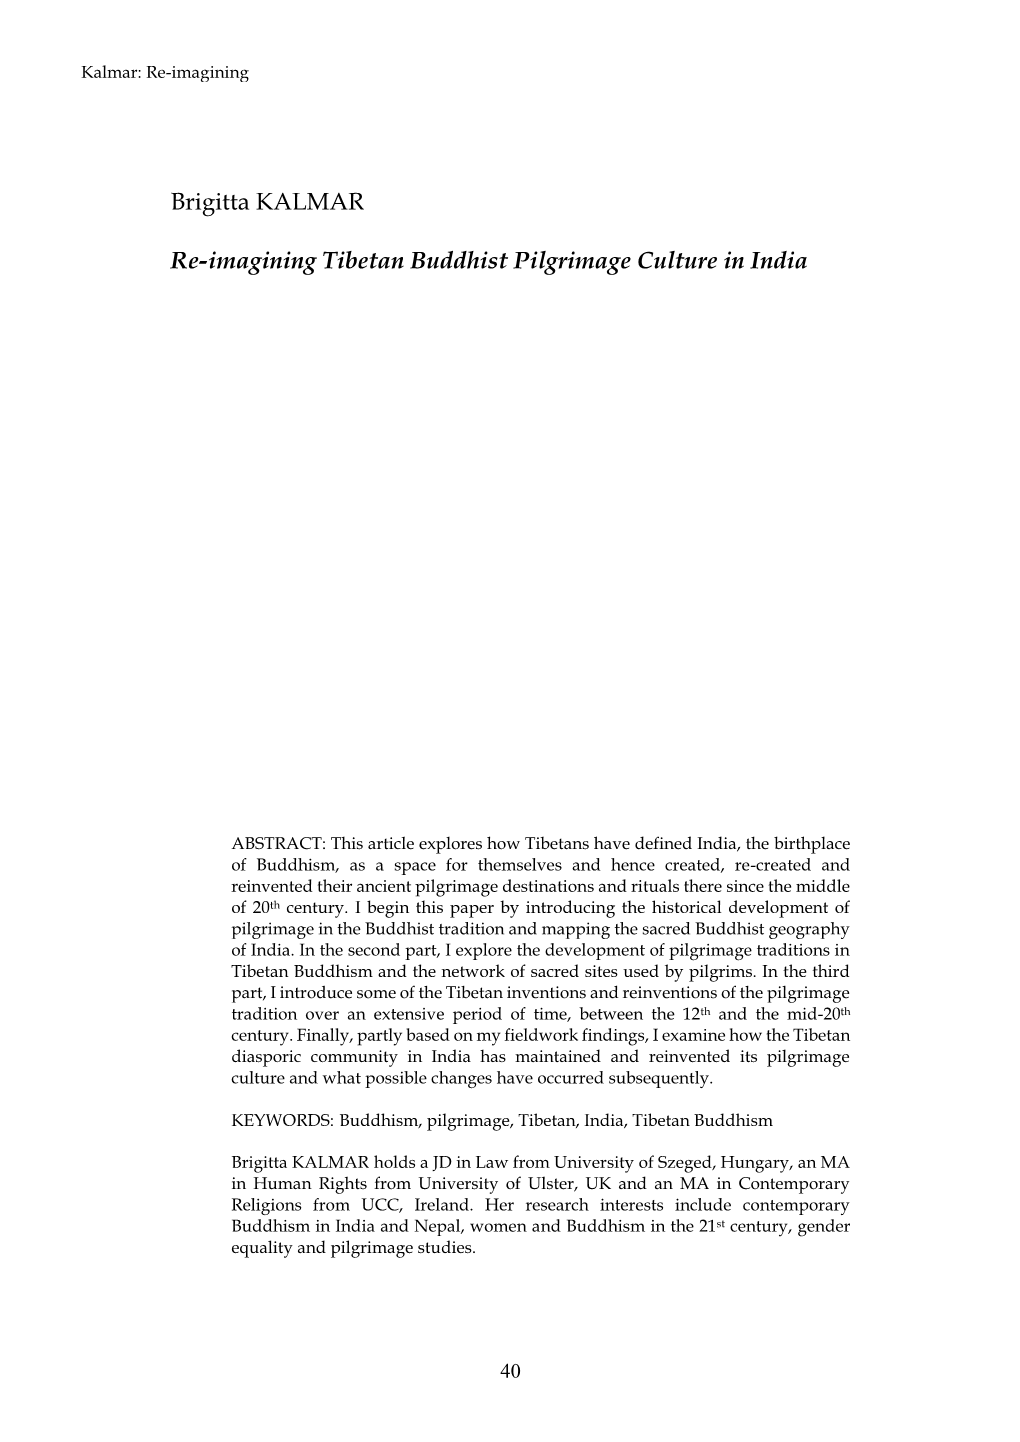 Re-Imagining Tibetan Buddhist Pilgrimage Culture in India